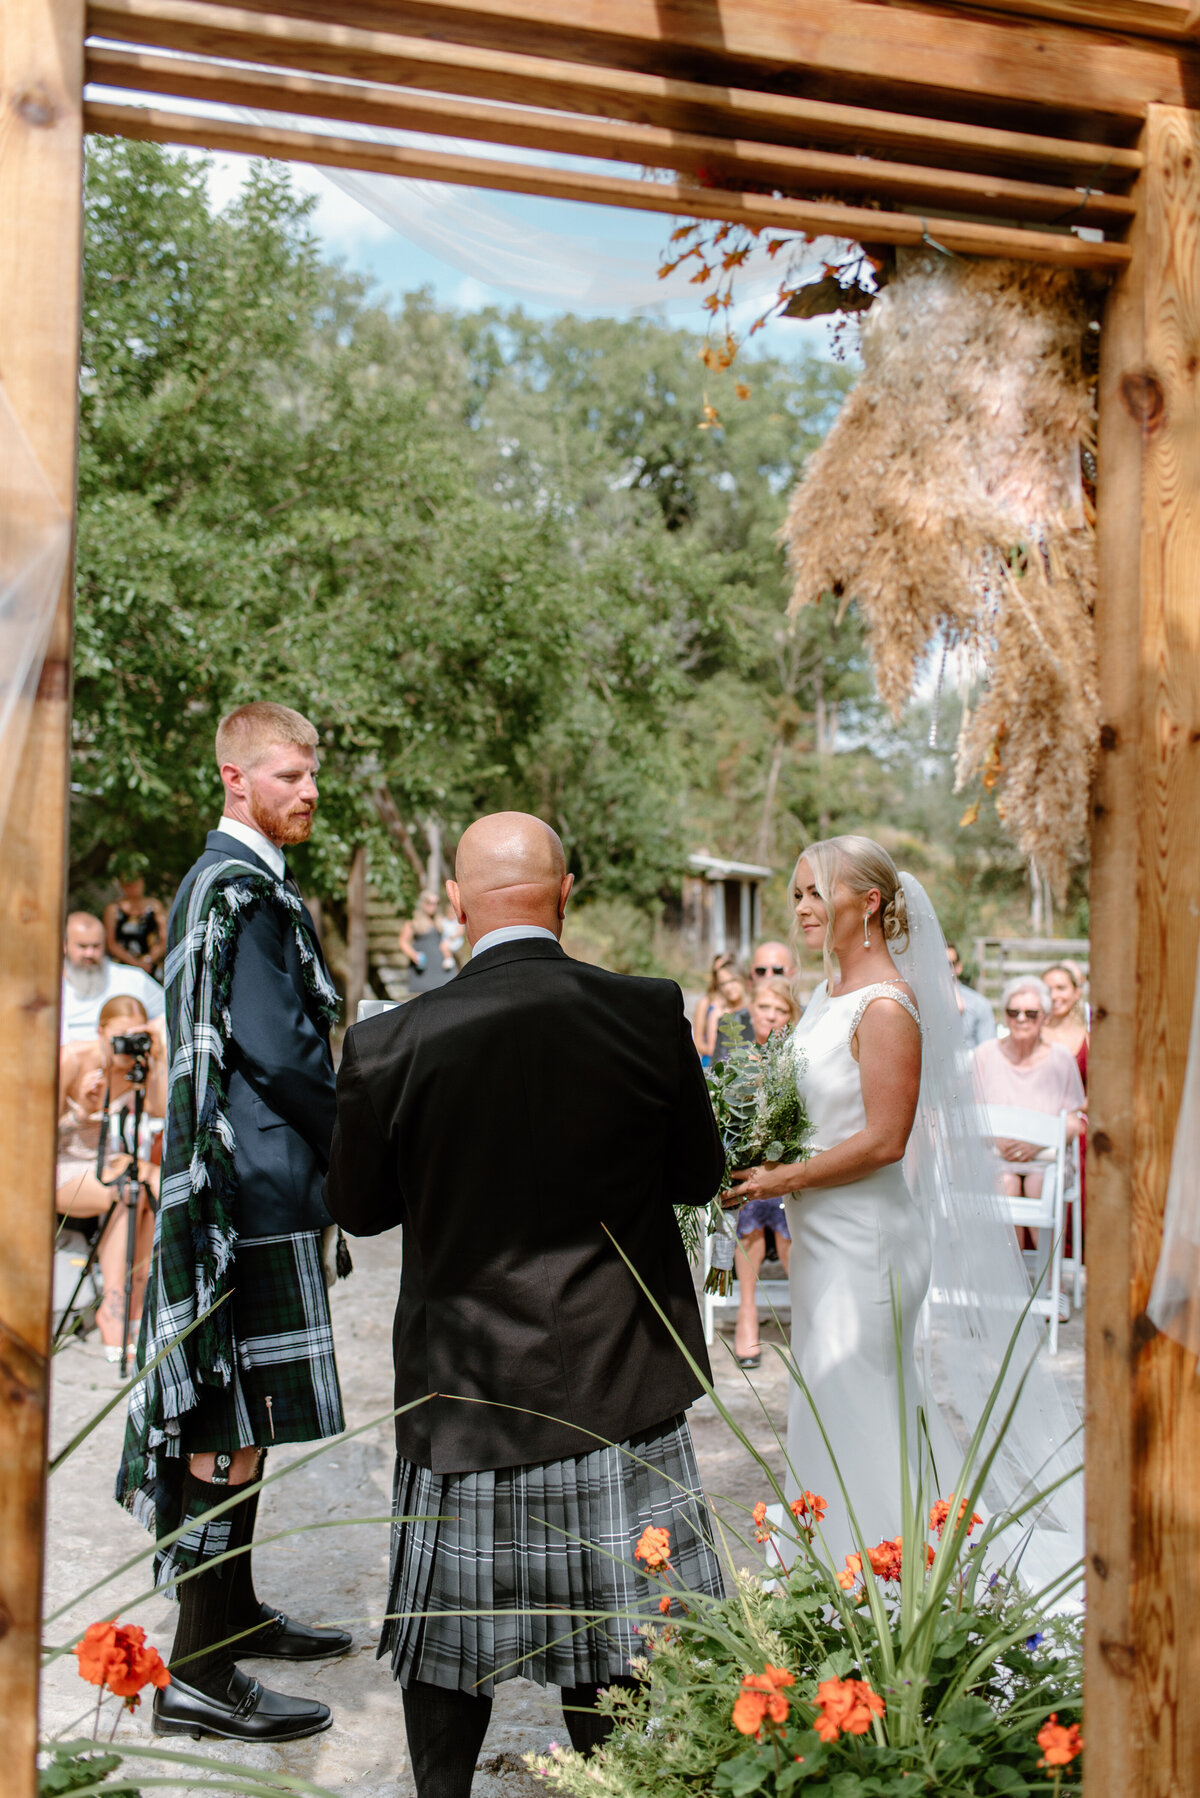 hamilton ontario wedding bride and groom say vows at outdoor ceremony